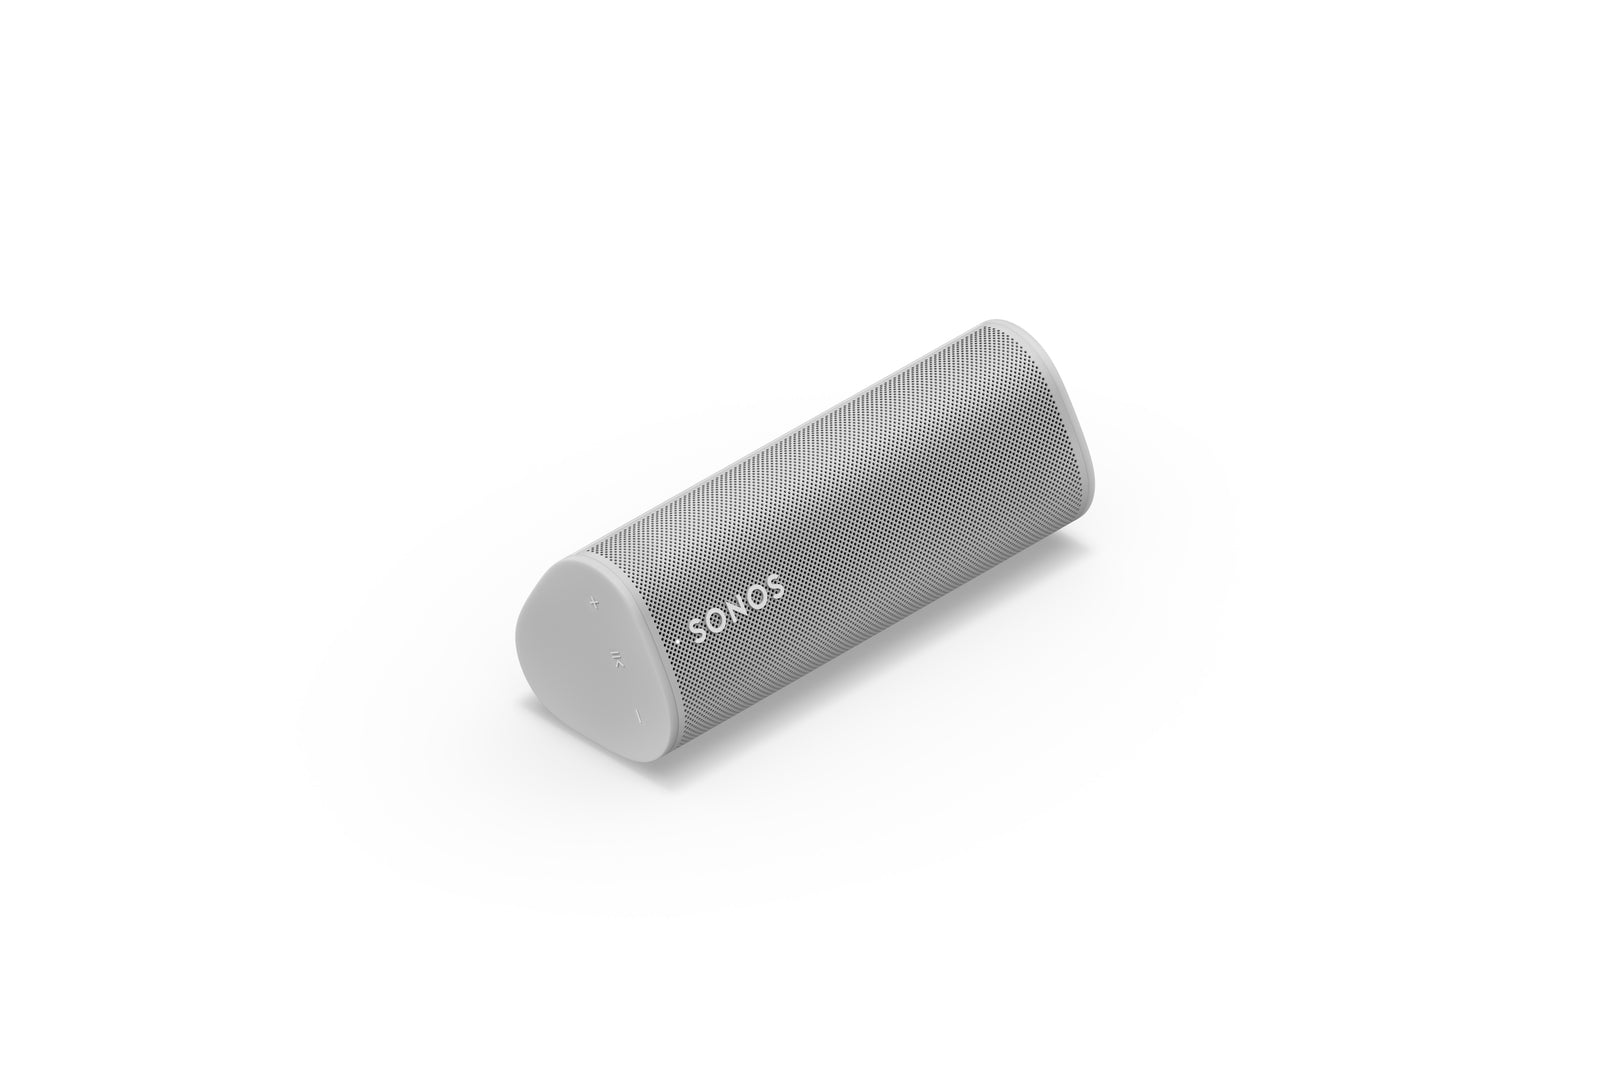 Sonos Roam SL wit ultradraagbare speaker